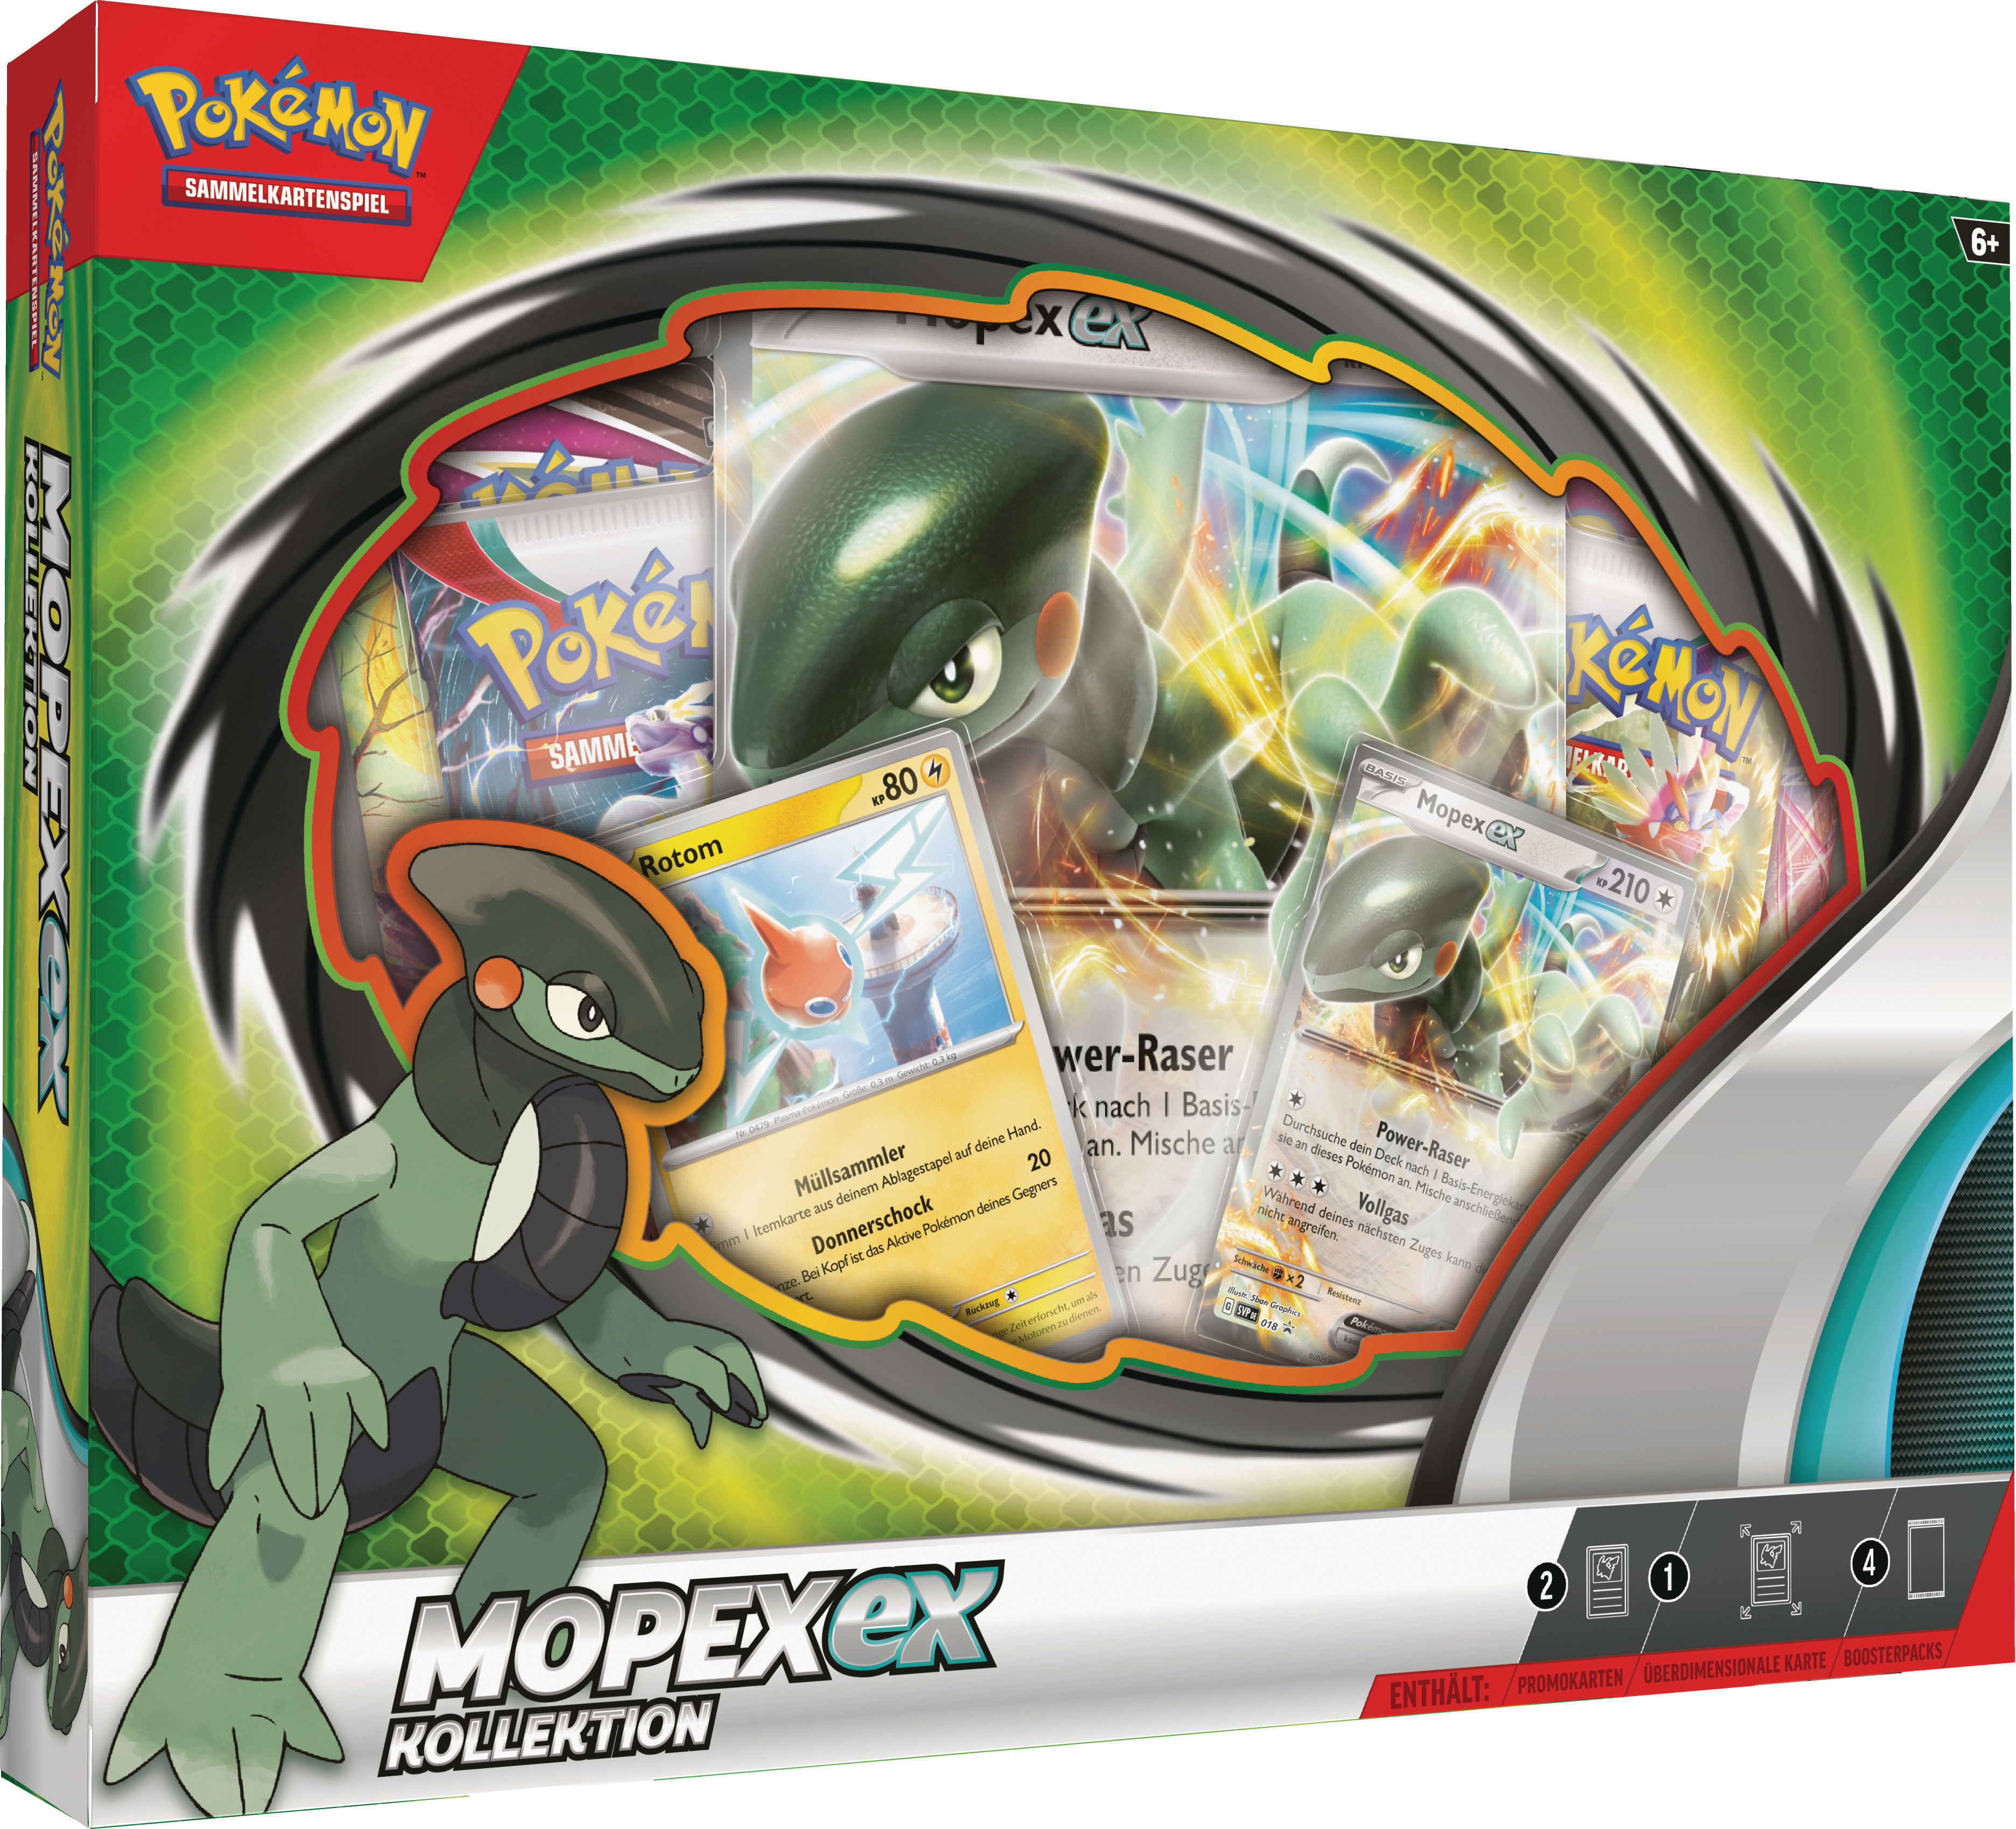 EX THE Box INT. POKEMON Mai Pokémon Sammelkartenspiel COMPANY